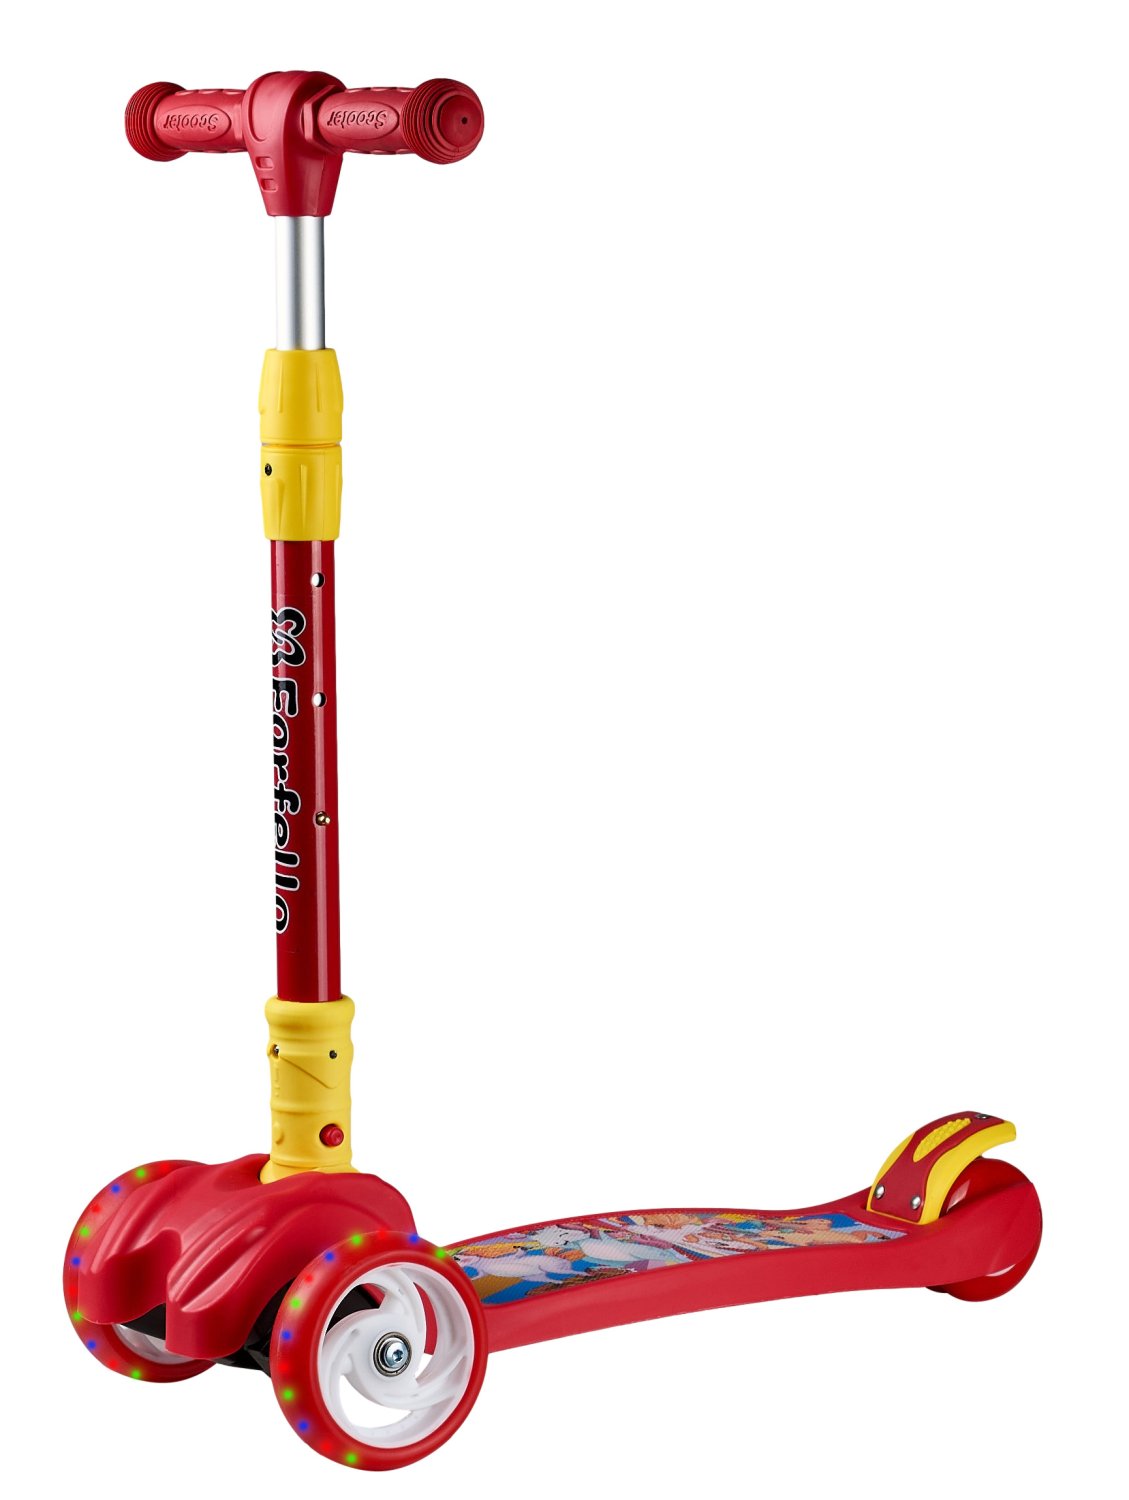 Самокат Farfello Maxi-897, детский, трёхколёсный, нагрузка до 50 кг, светящиеся колёса, red/красный электромобиль детский трицикл farfello sl631 красный